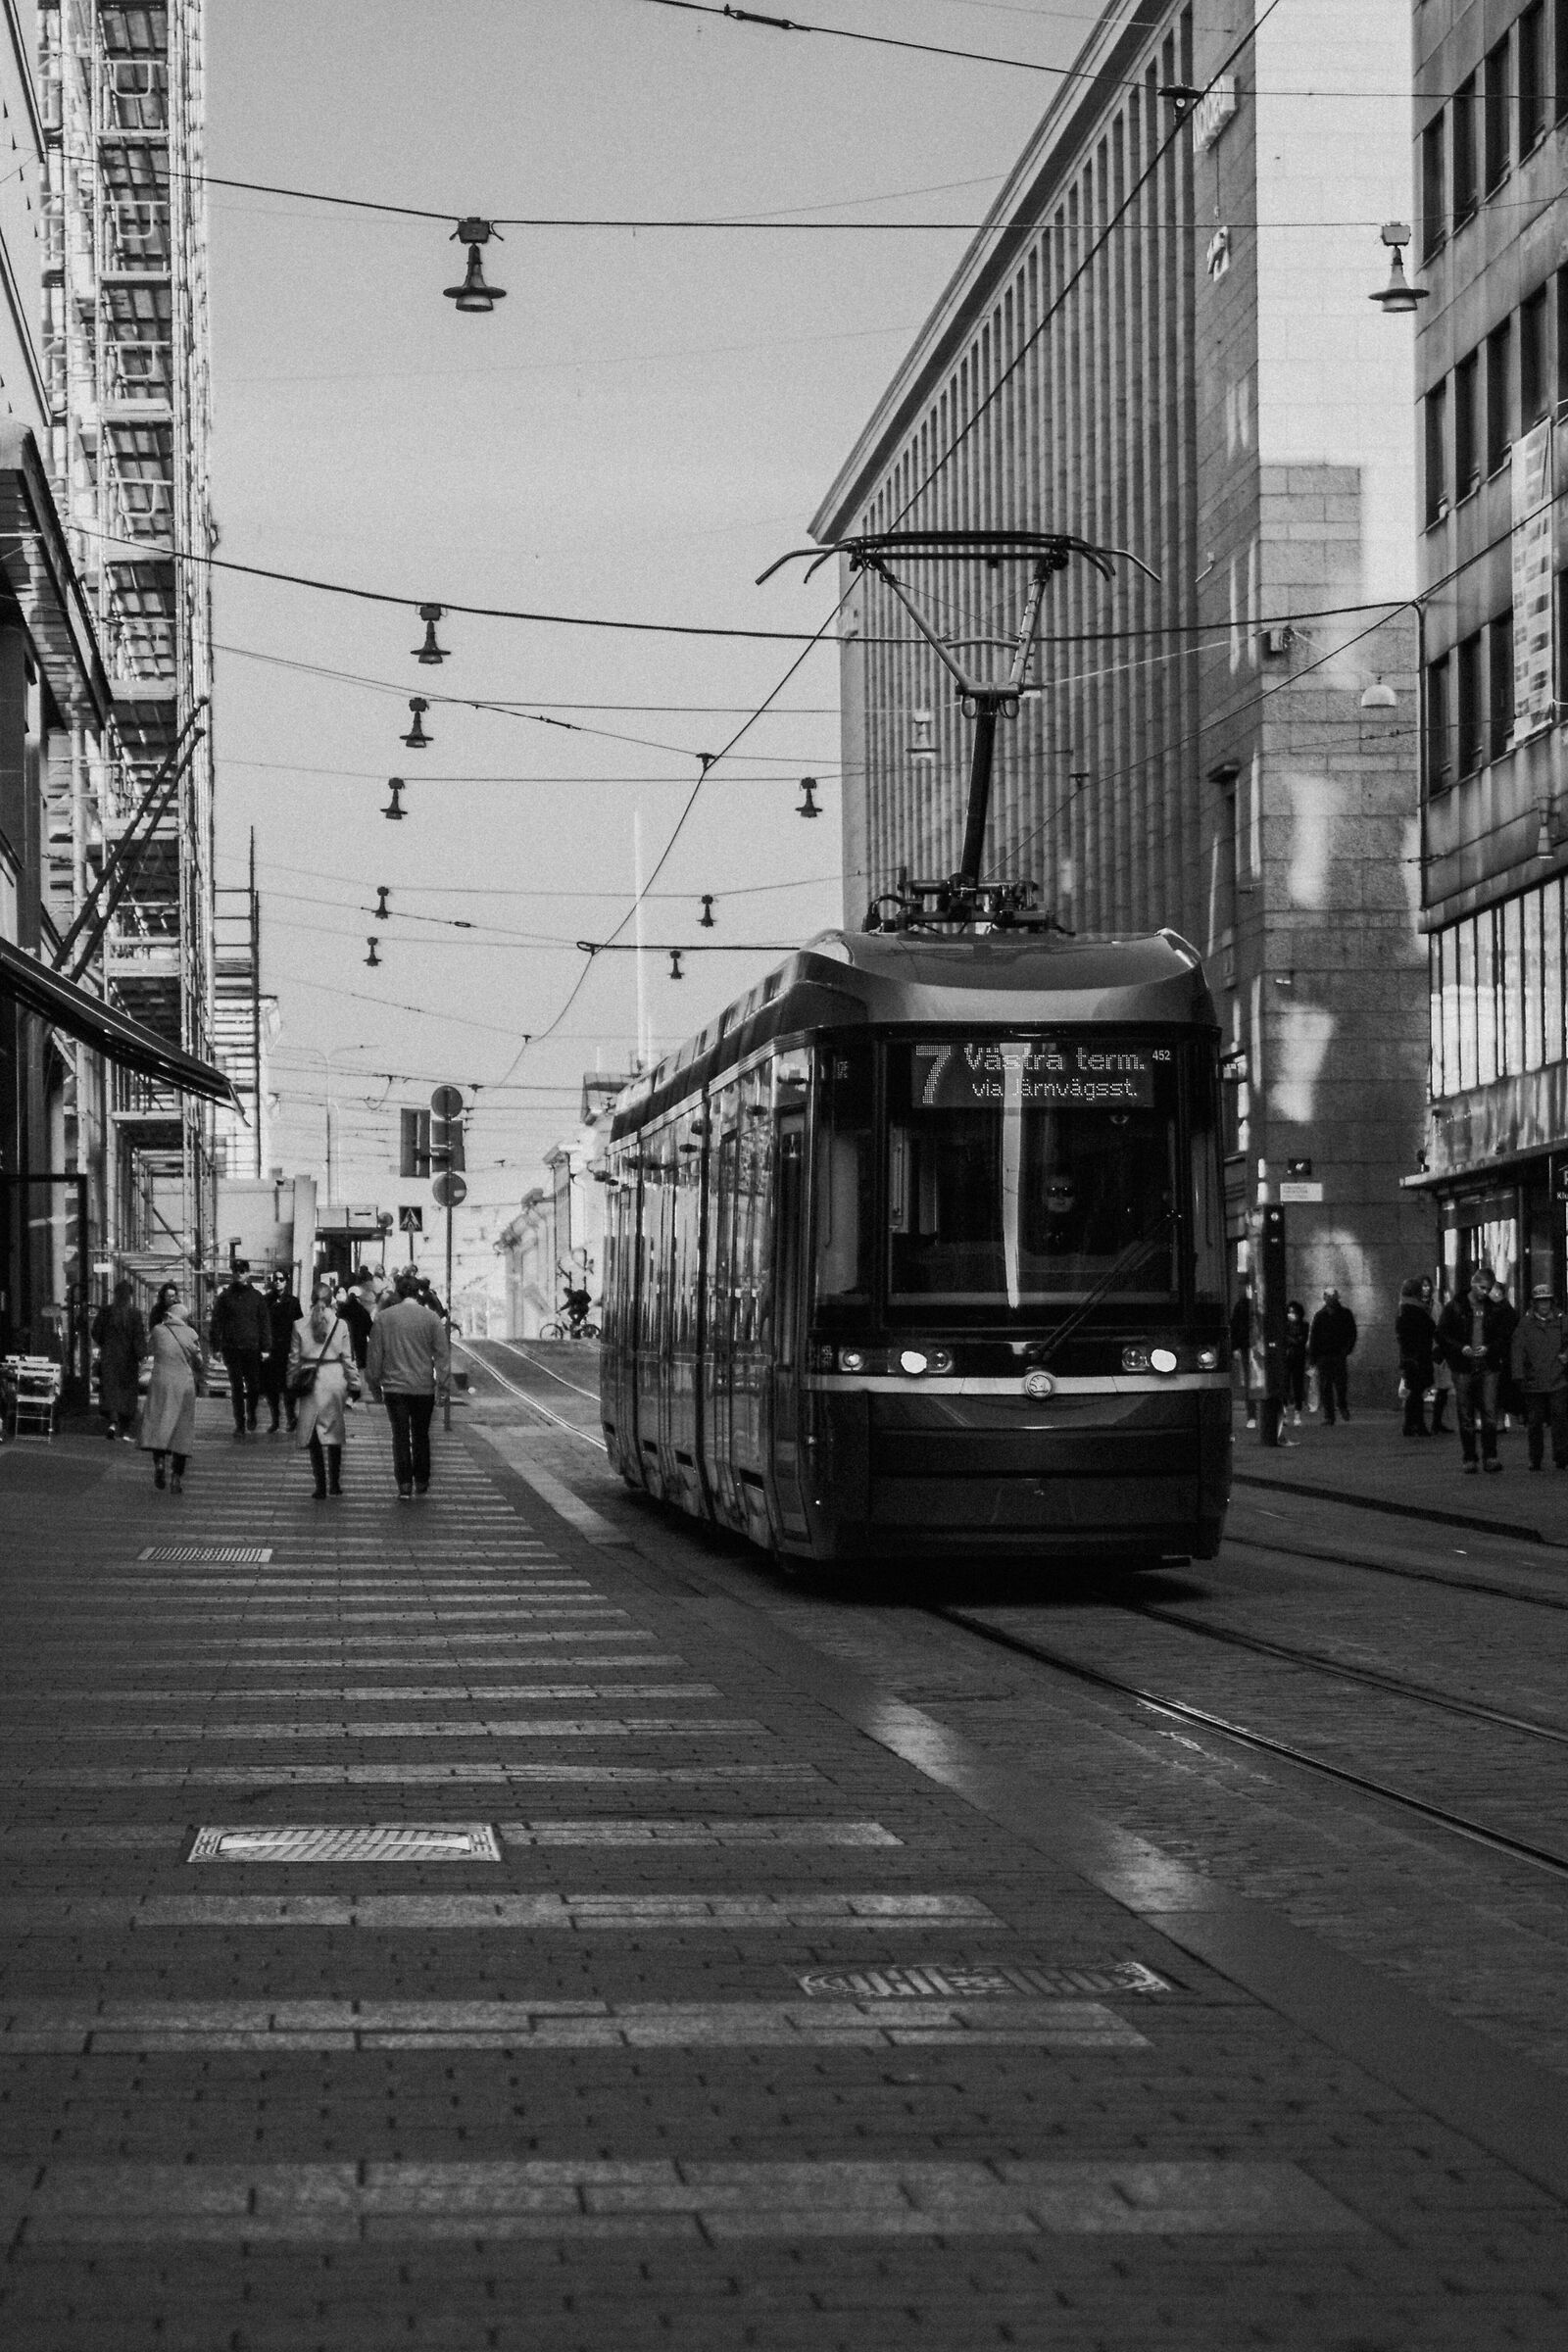 Helsinki Tram lines...